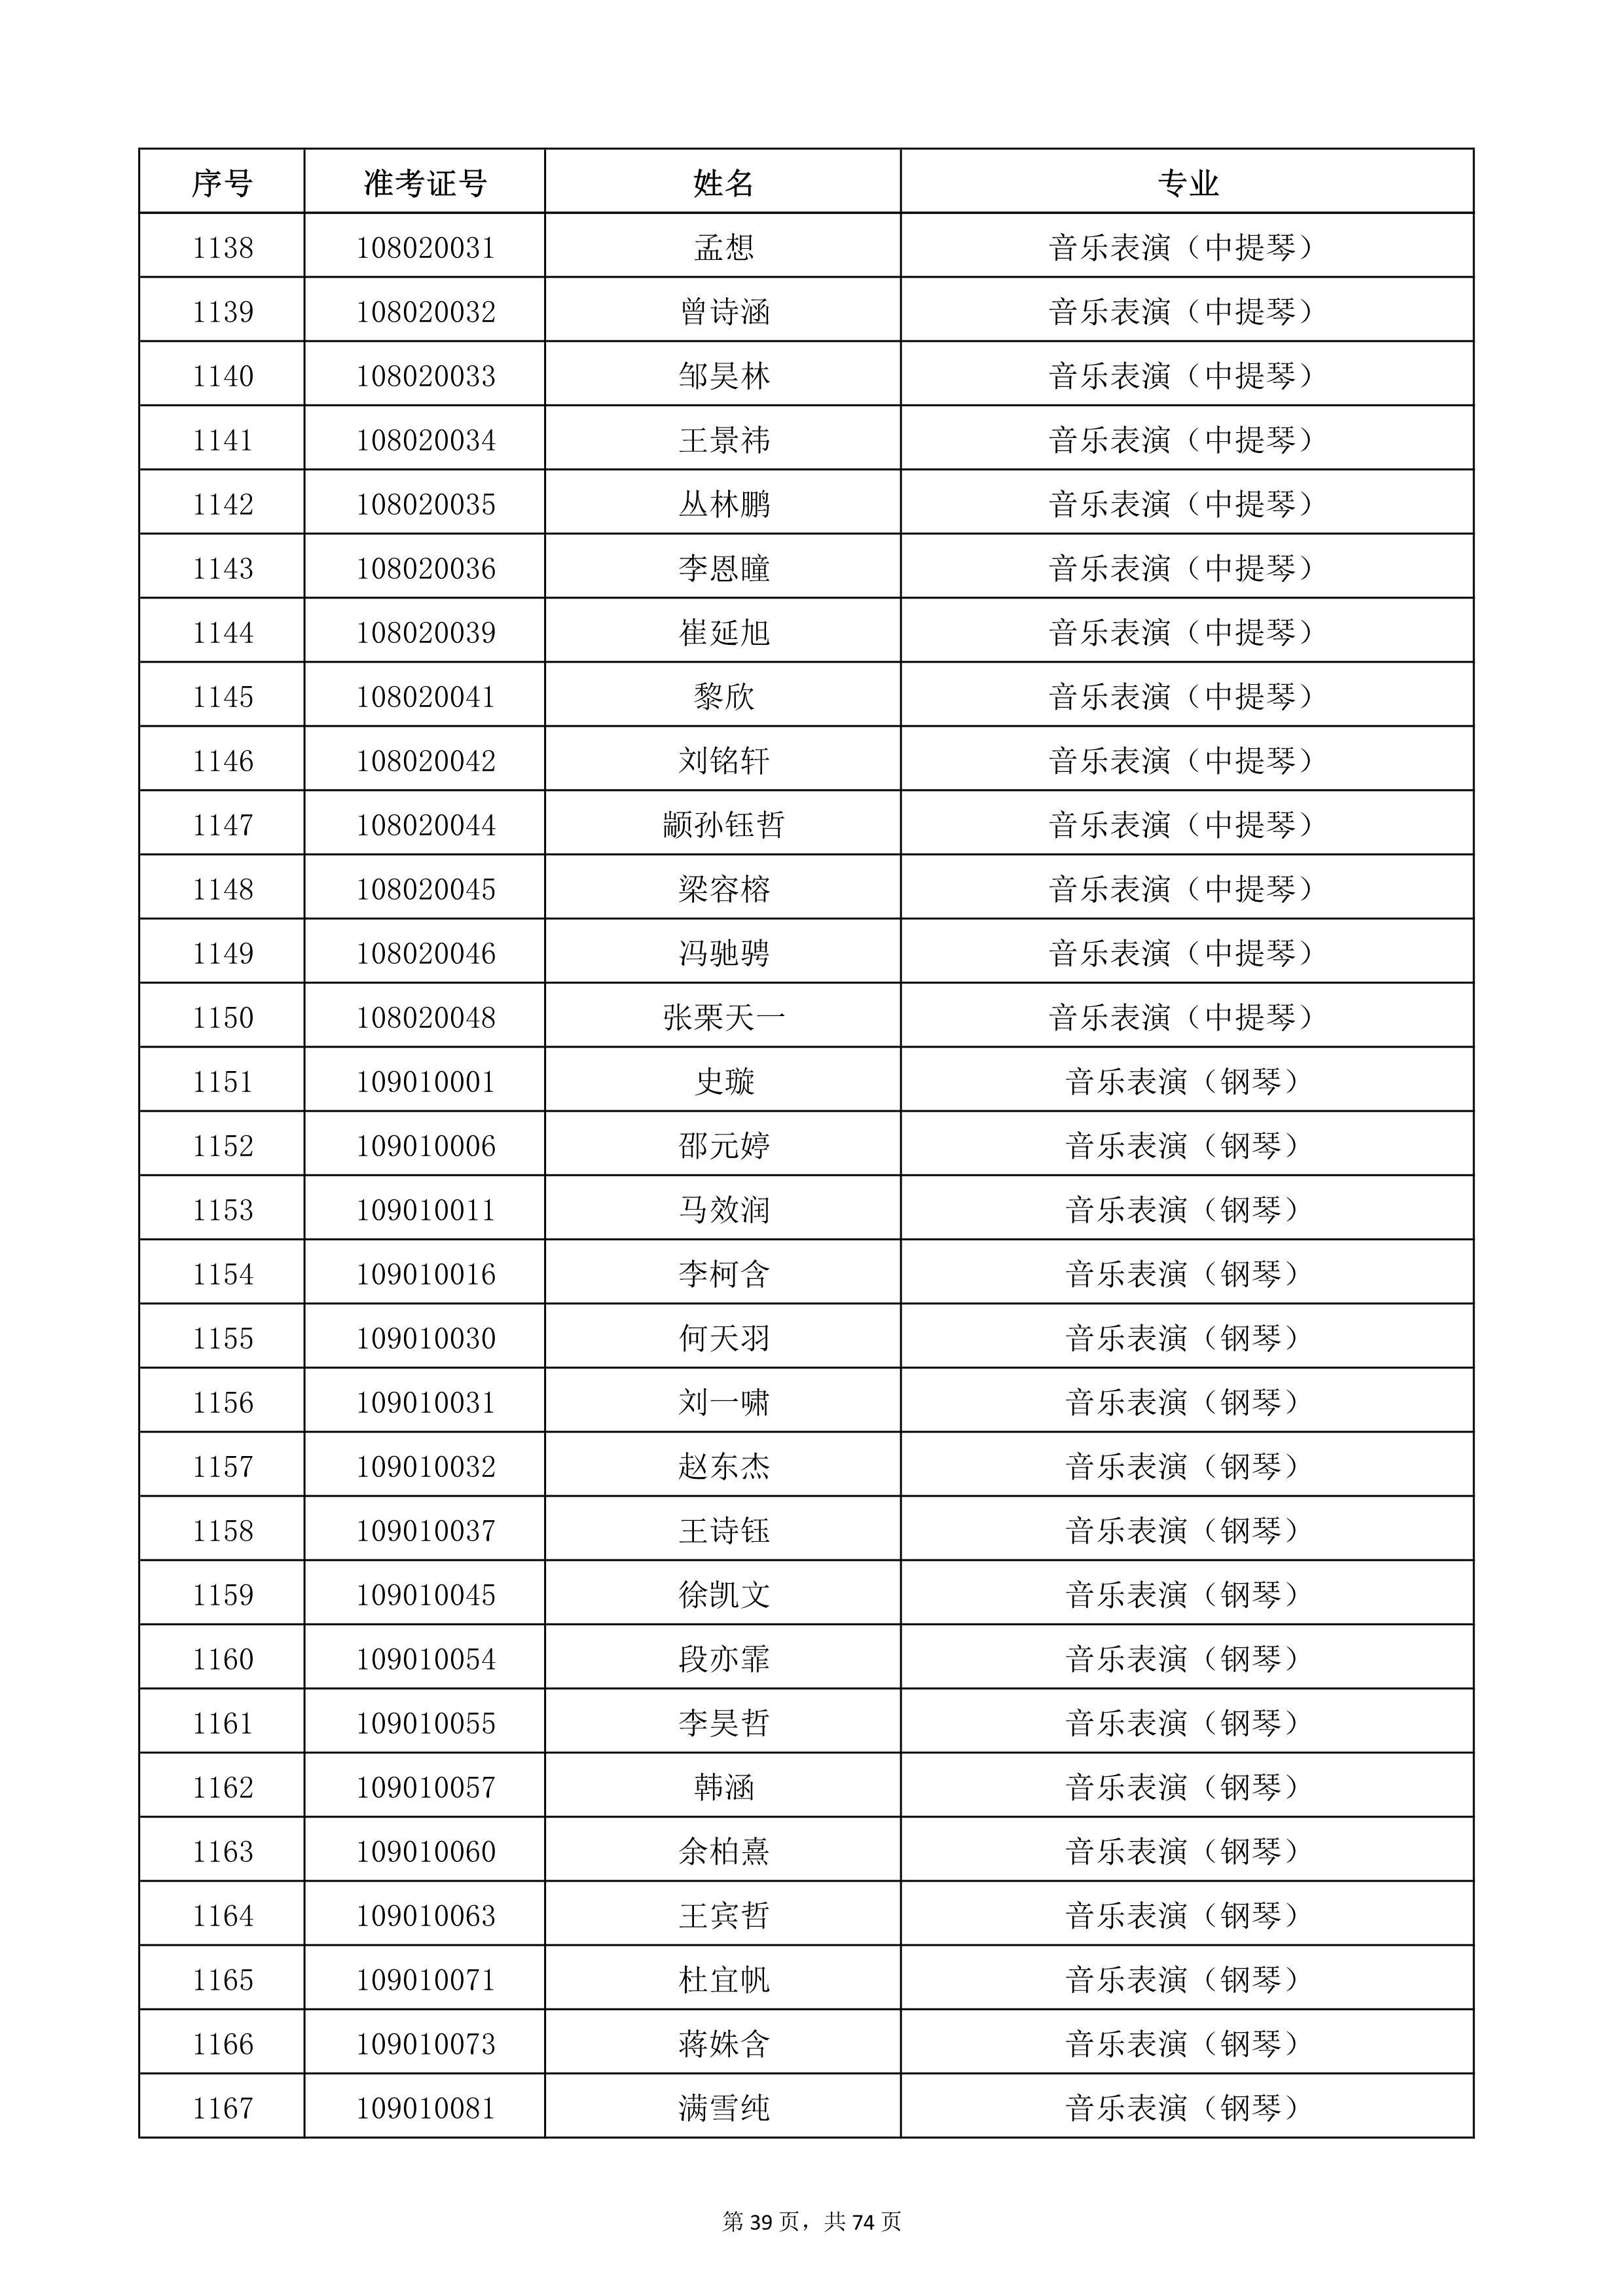 天津音乐学院2022年本科招生考试复试名单_39.jpg